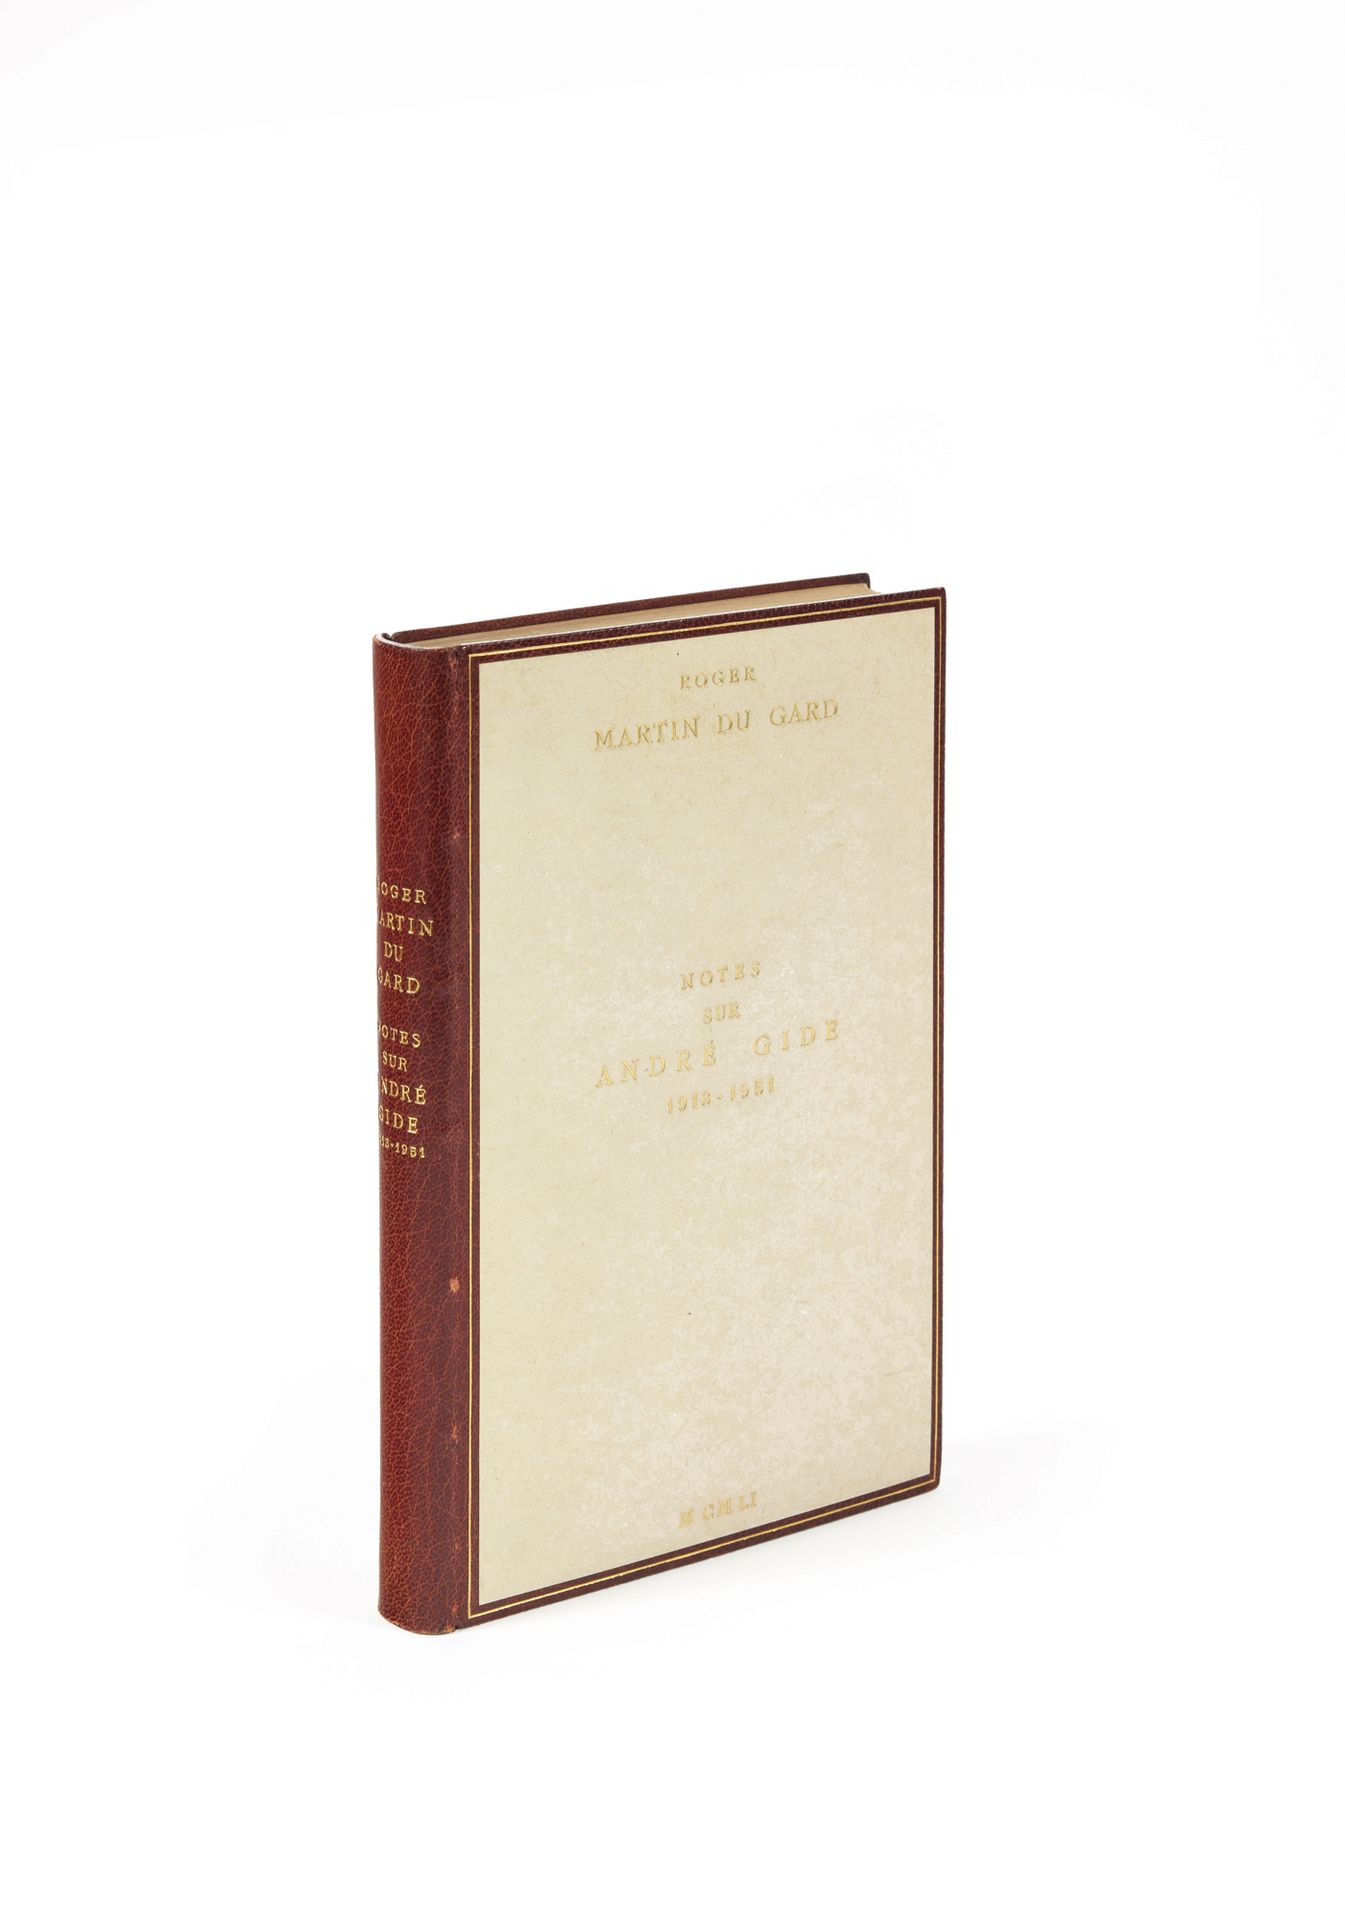 Martin du Gard, Roger Notes sur André Gide 1913-1951. Paris, Gallimard, 1951; in&hellip;